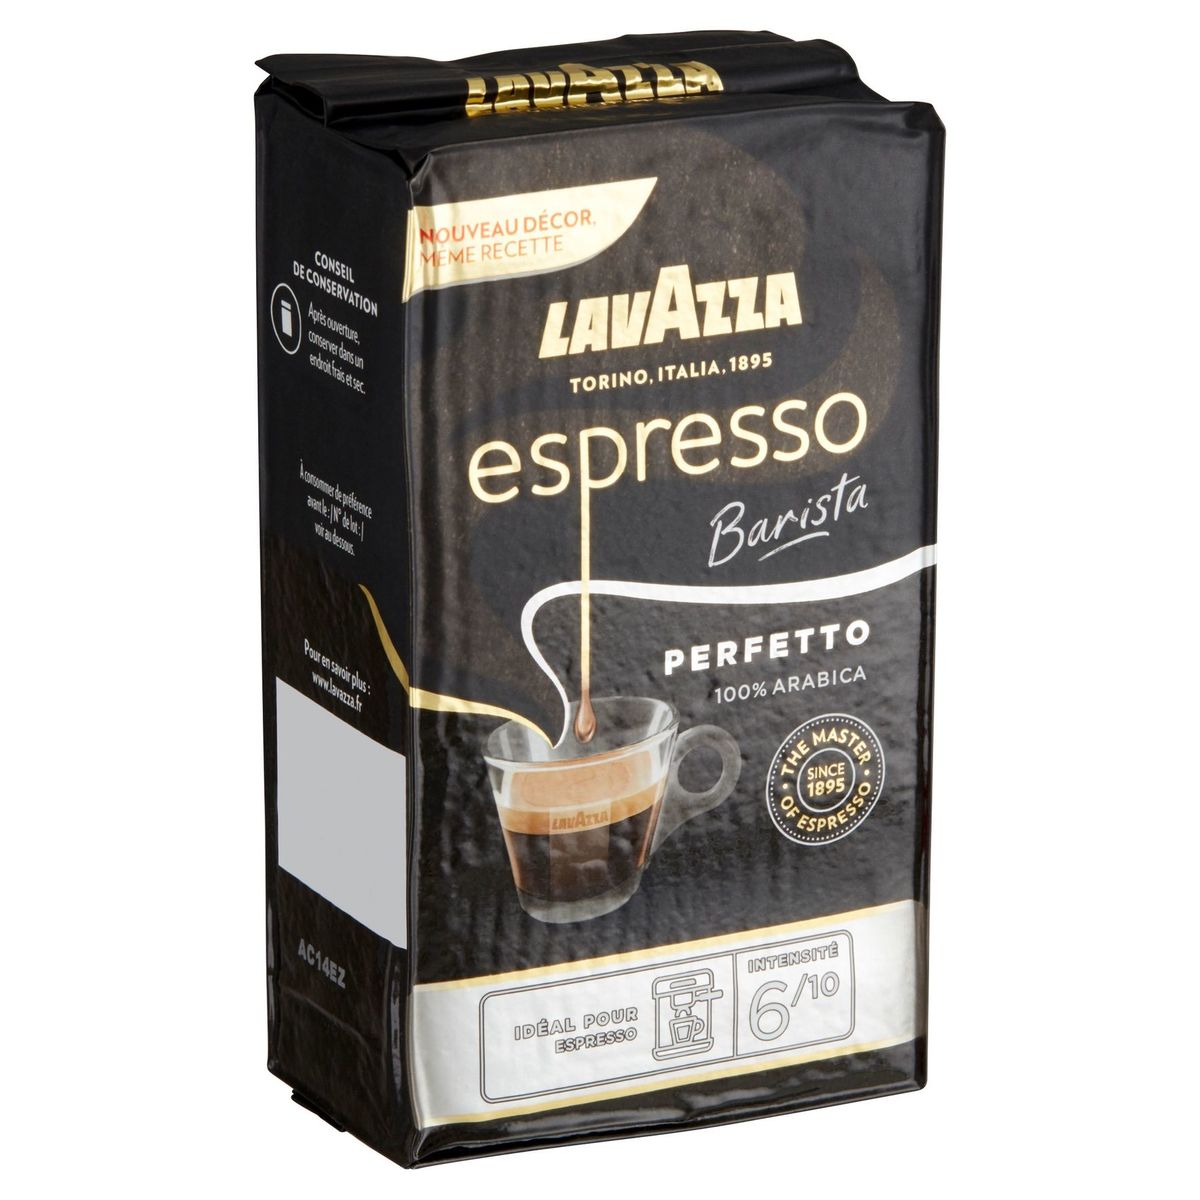 Lavazza Espresso Barista Perfetto 250 g